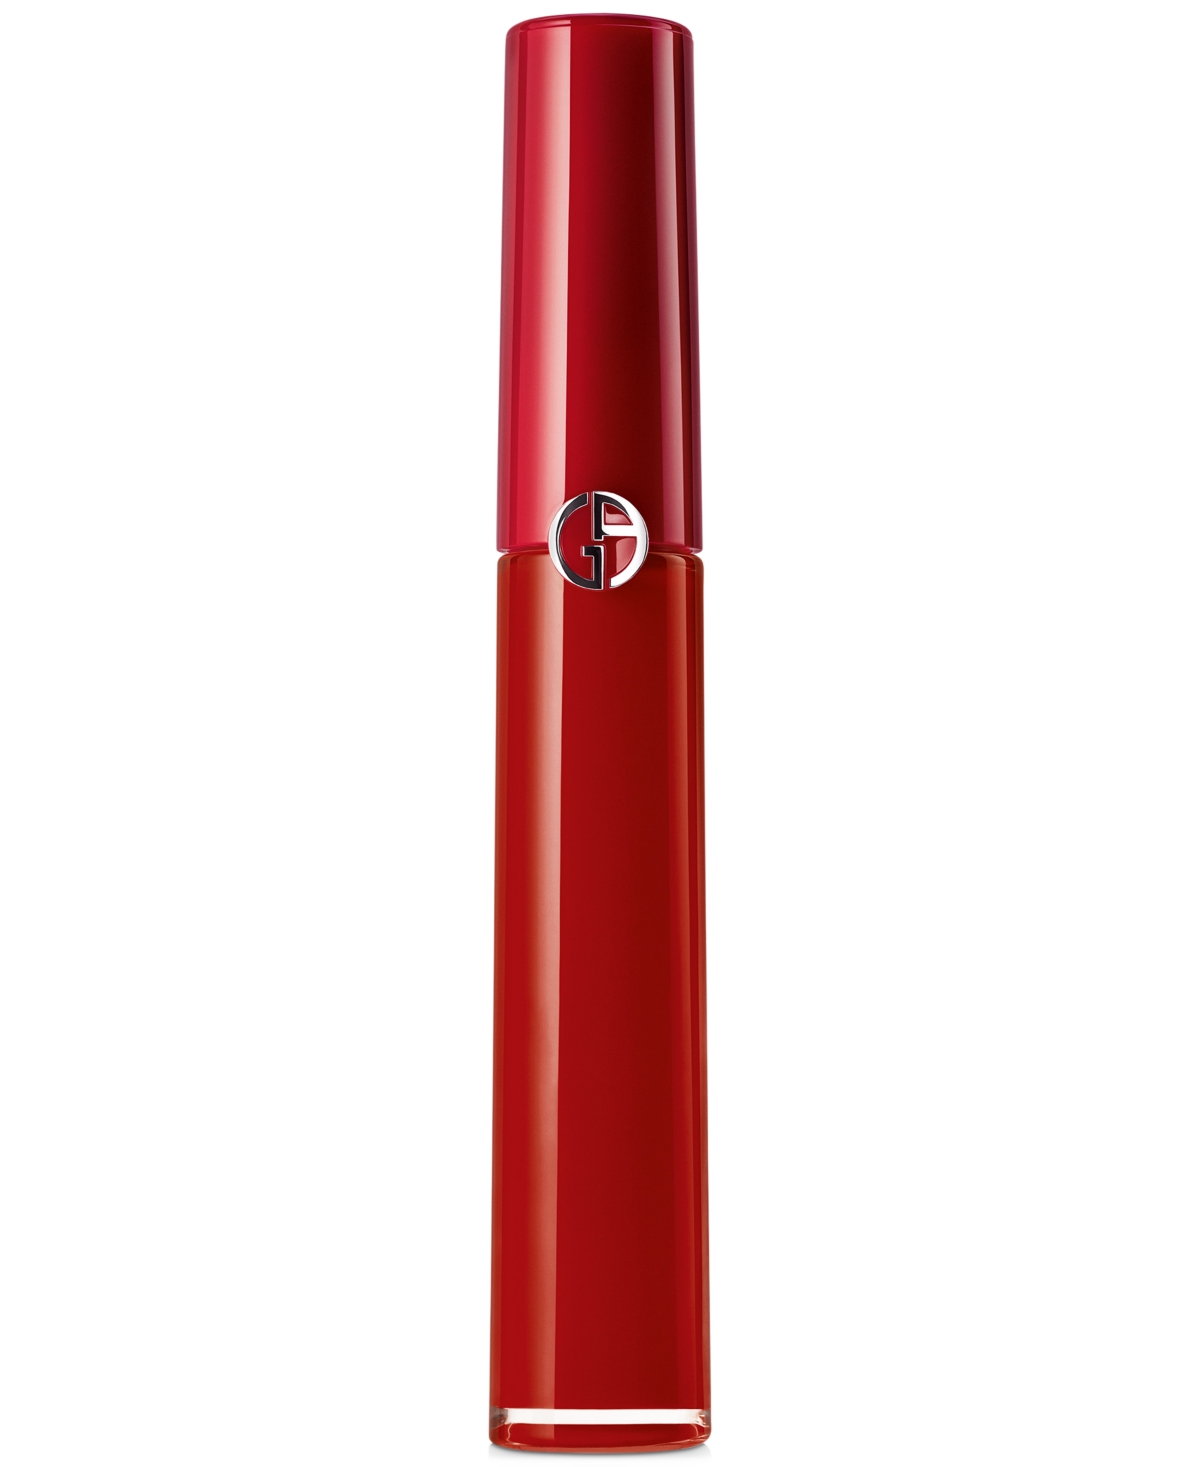 Giorgio Armani Armani Beauty Lip Maestro Liquid Matte Lipstick In Chinese Lacquer,red